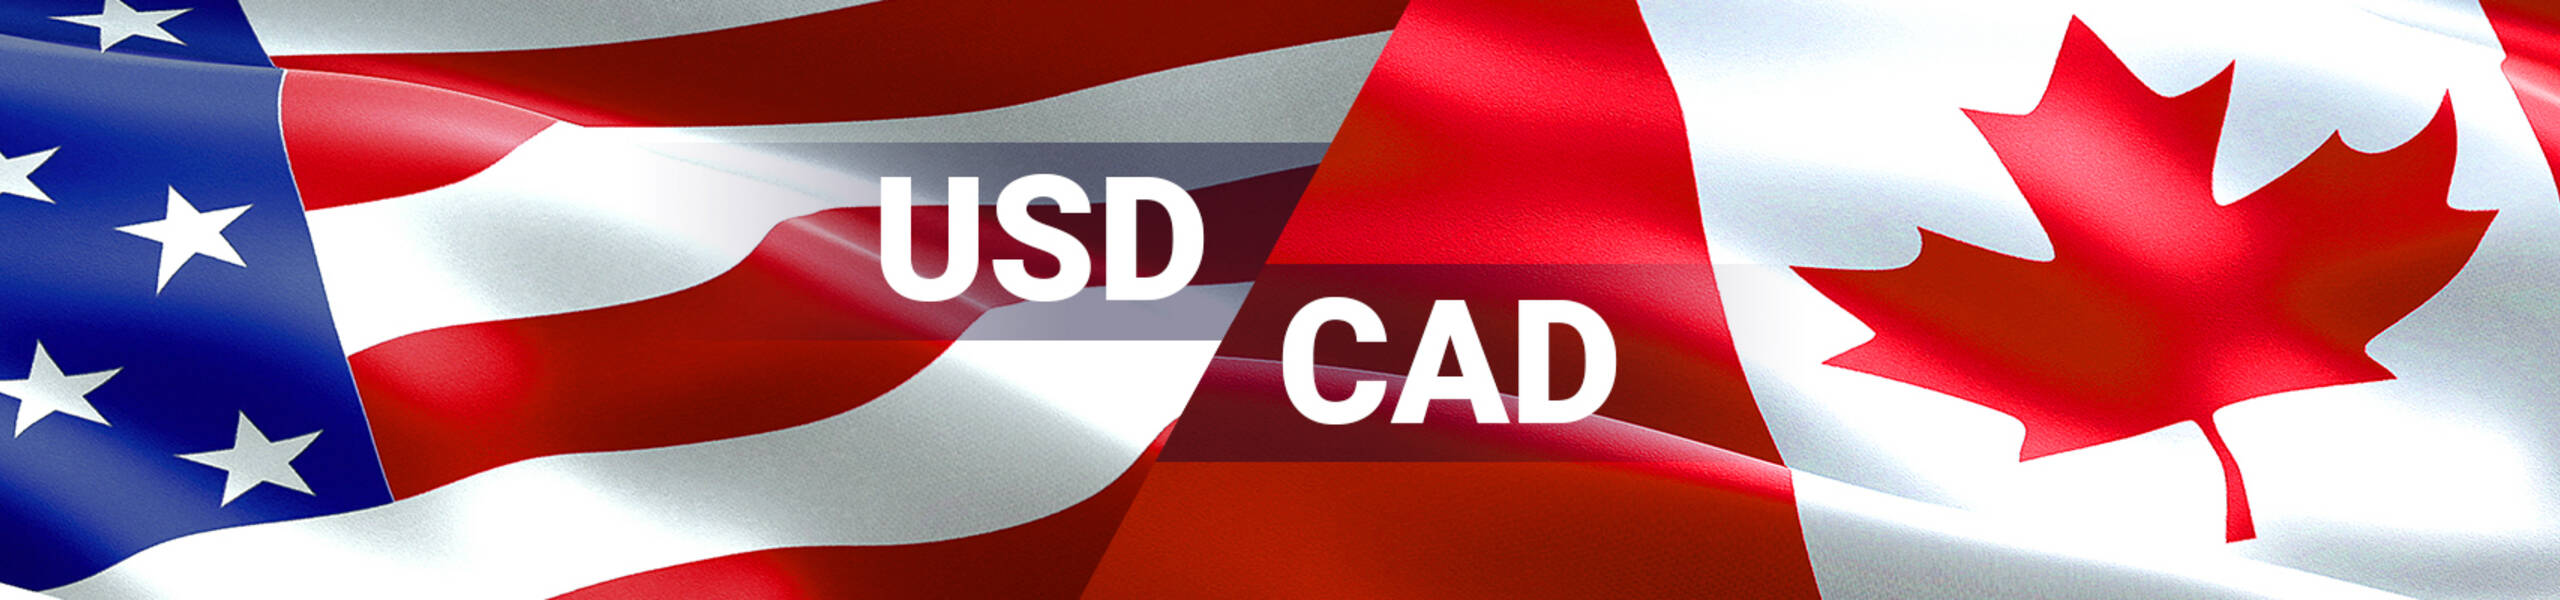 USD/CAD buscando la ruptura de los bajos del 14 de Junio